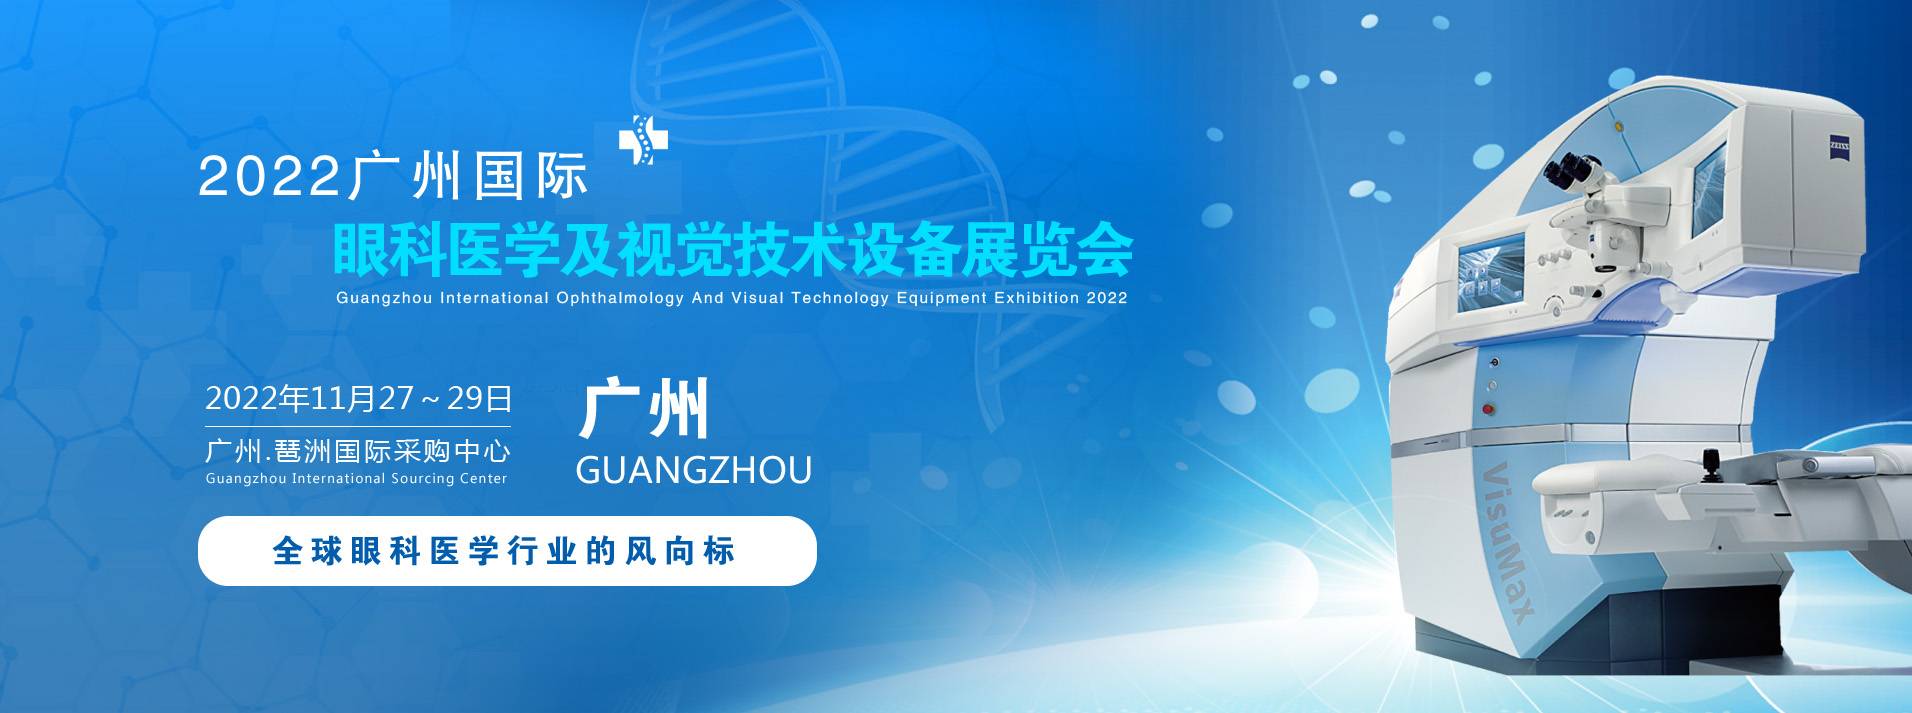 2022广州国际眼科医学及视觉技术设备展览会.jpg